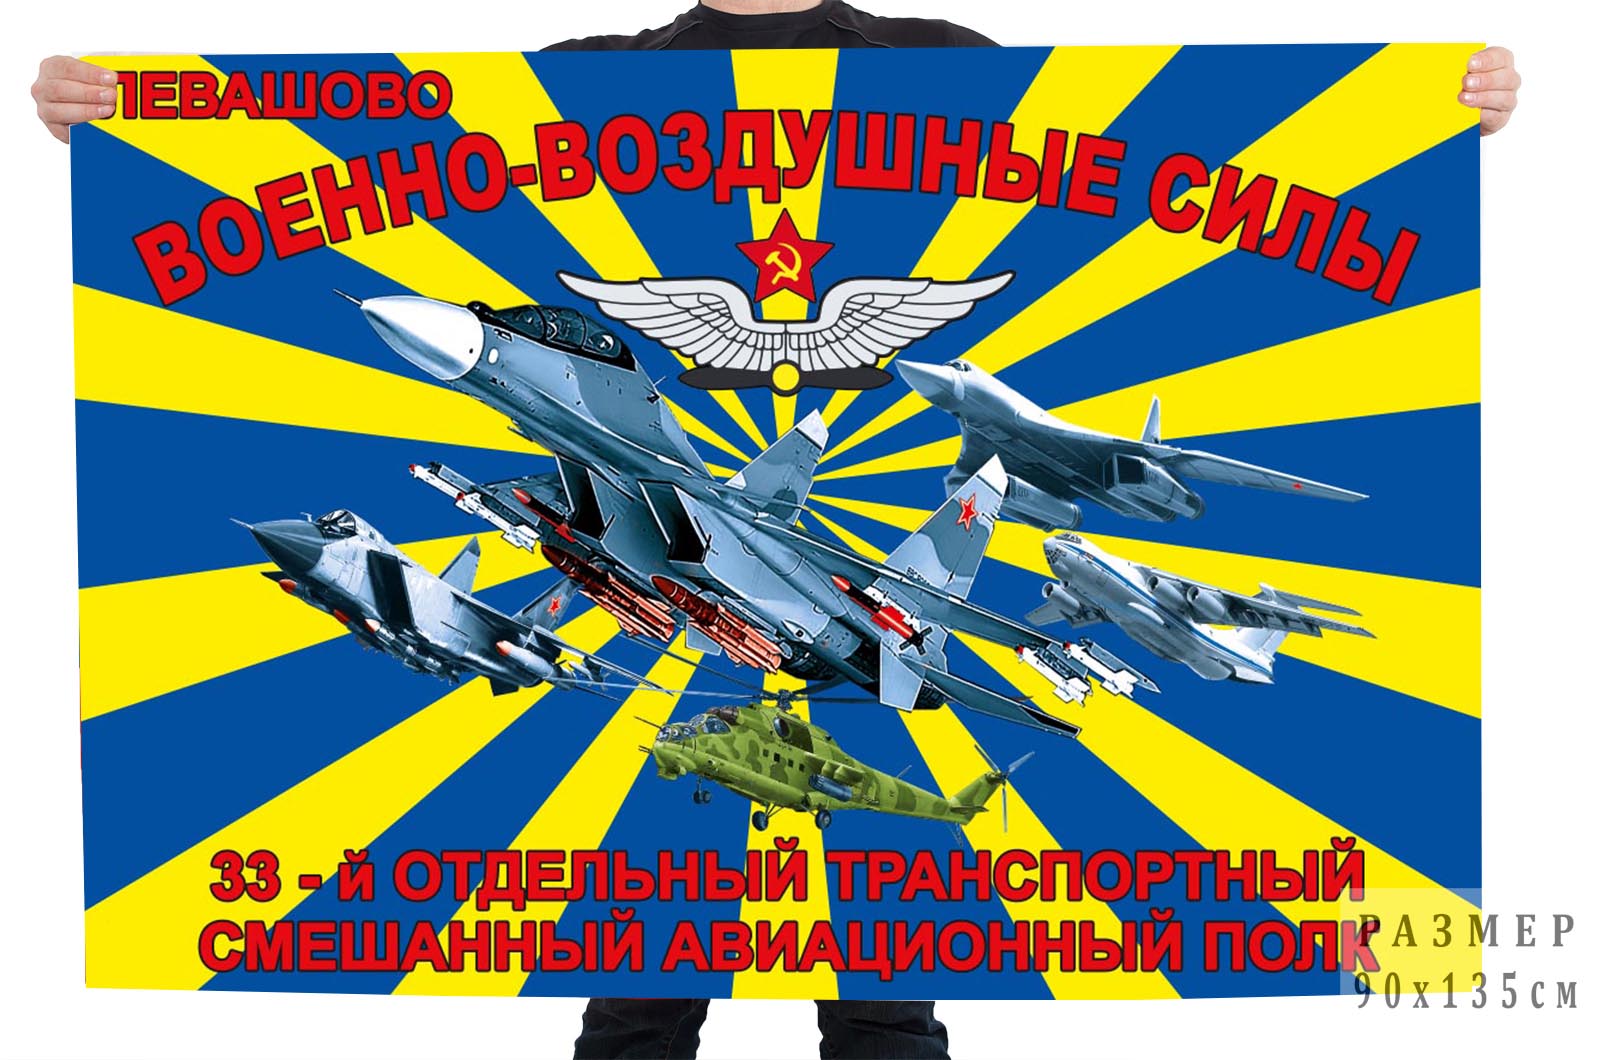 Заказать флаг 33-го отдельного транспортного смешанного авиационного полка Левашово